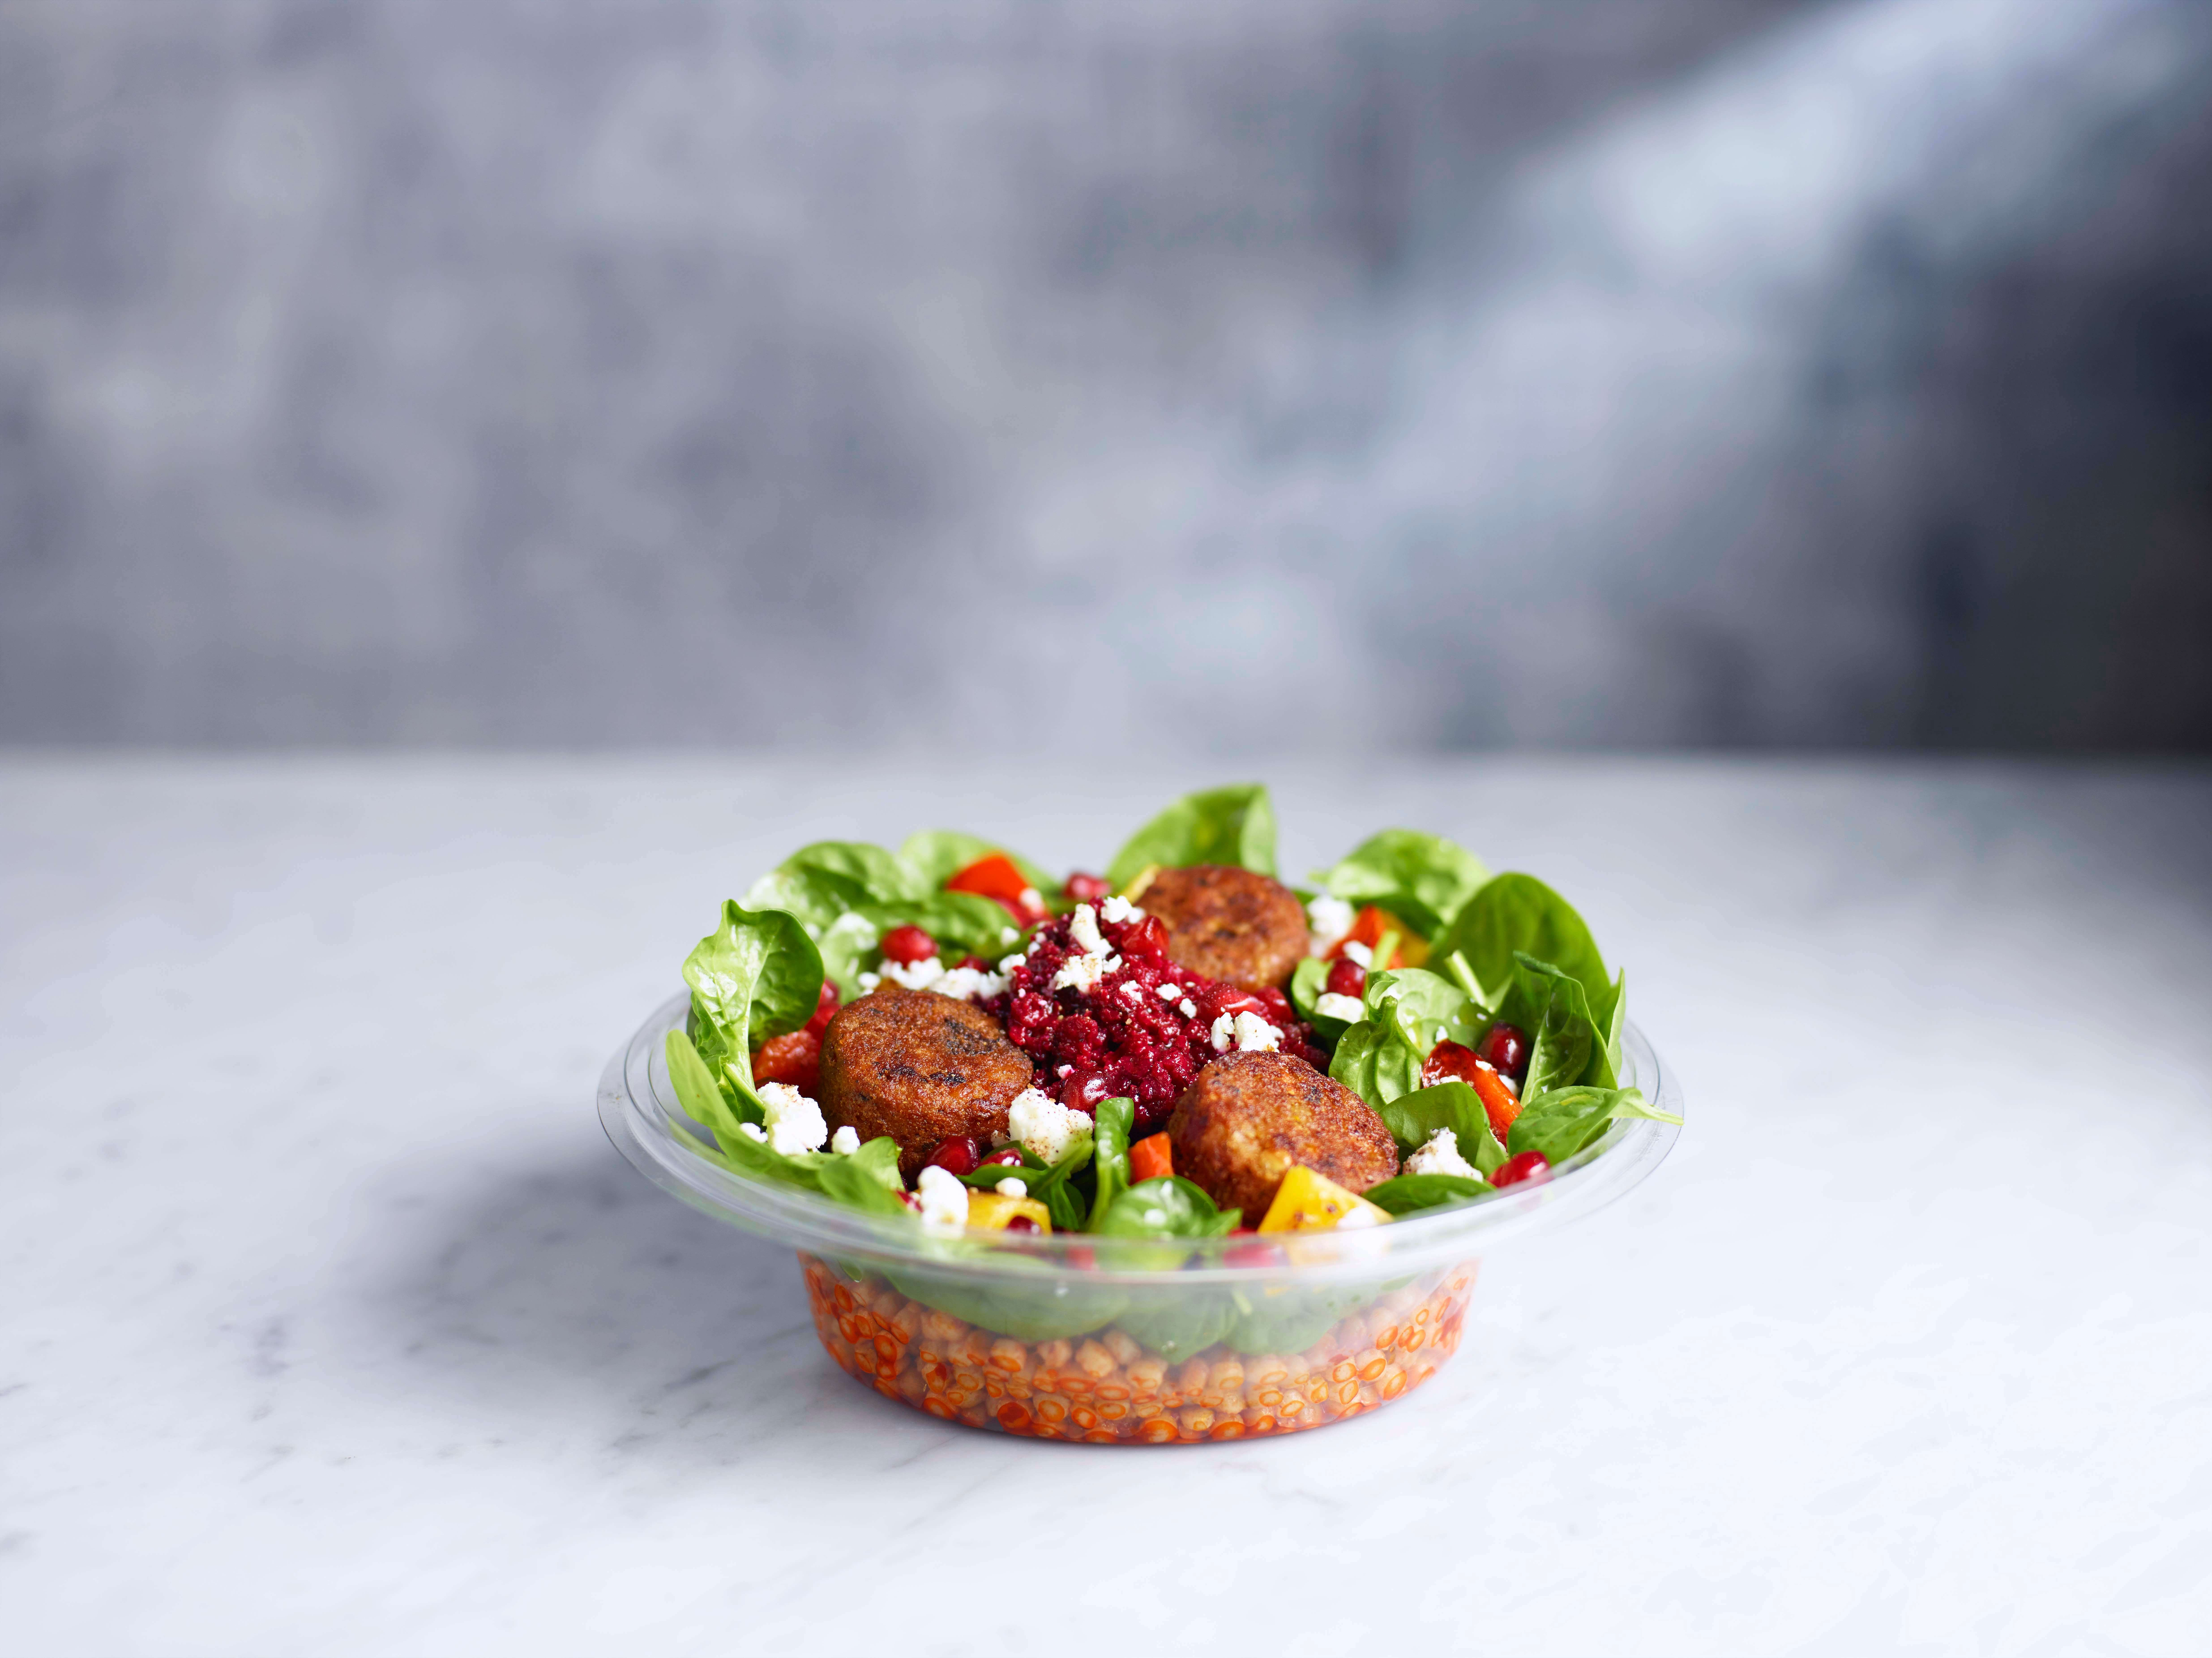 Jamie Oliver's deli for Shell: Falafel Salad